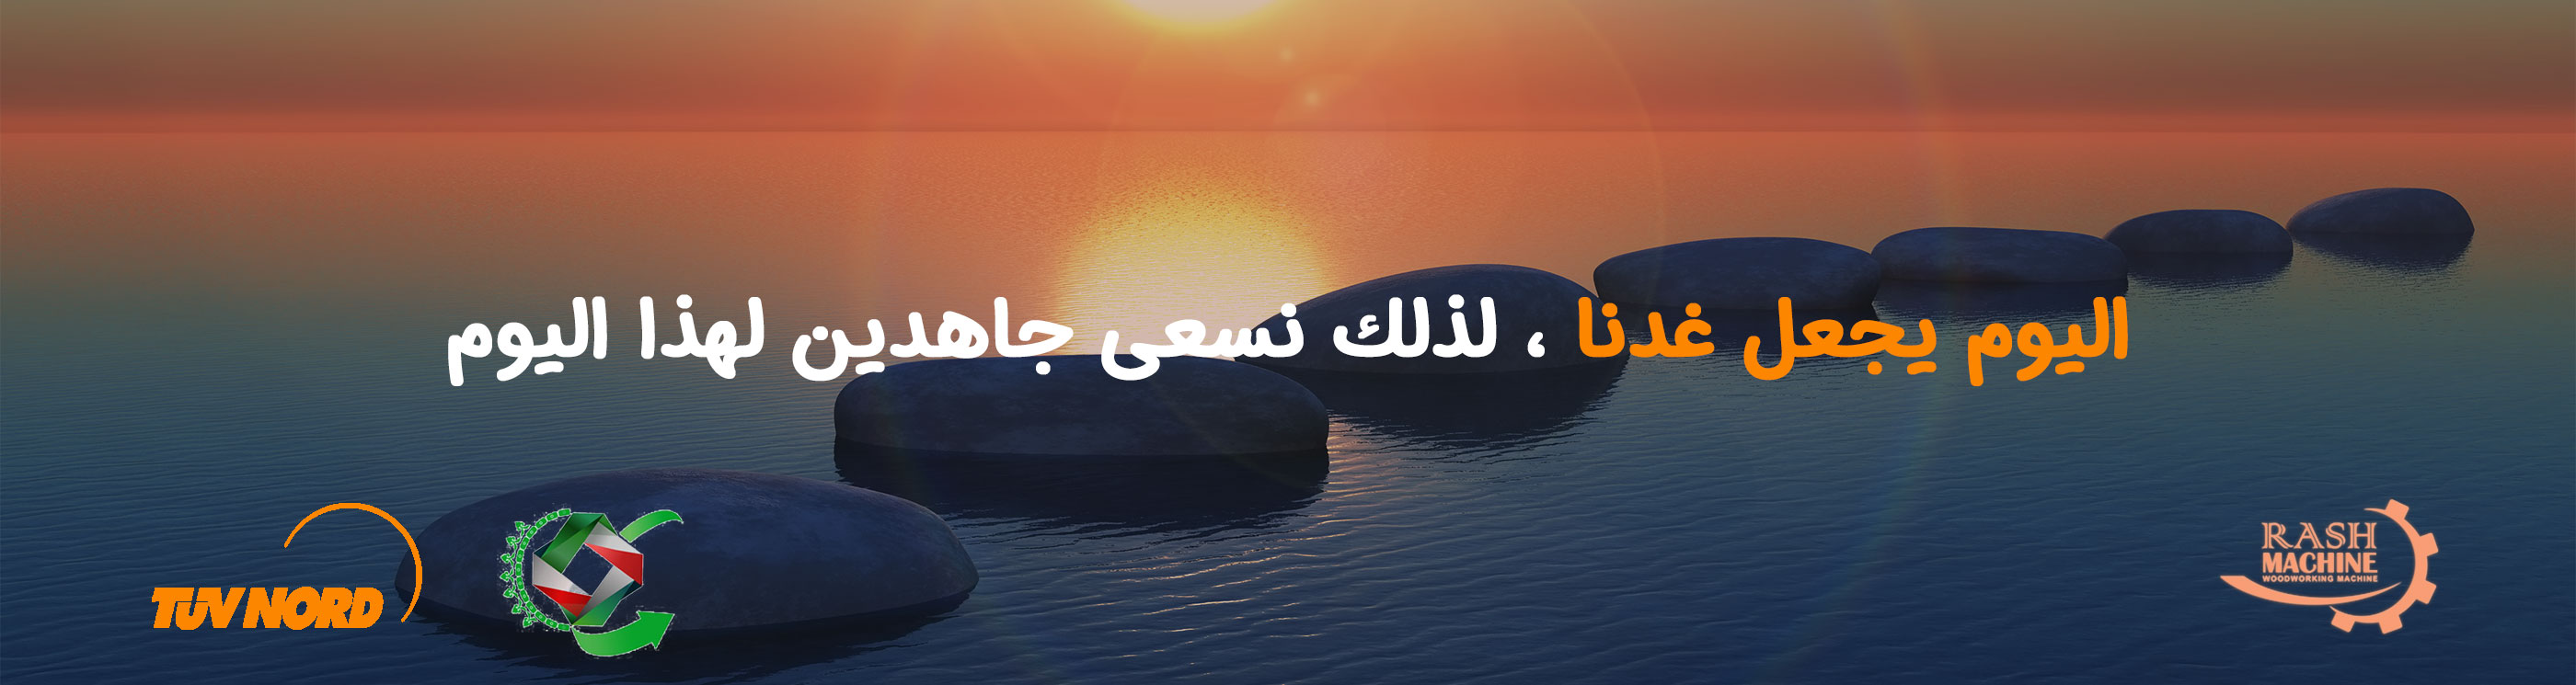 آینده ی شرکت دانش بنیان راش ماشین (عربی)